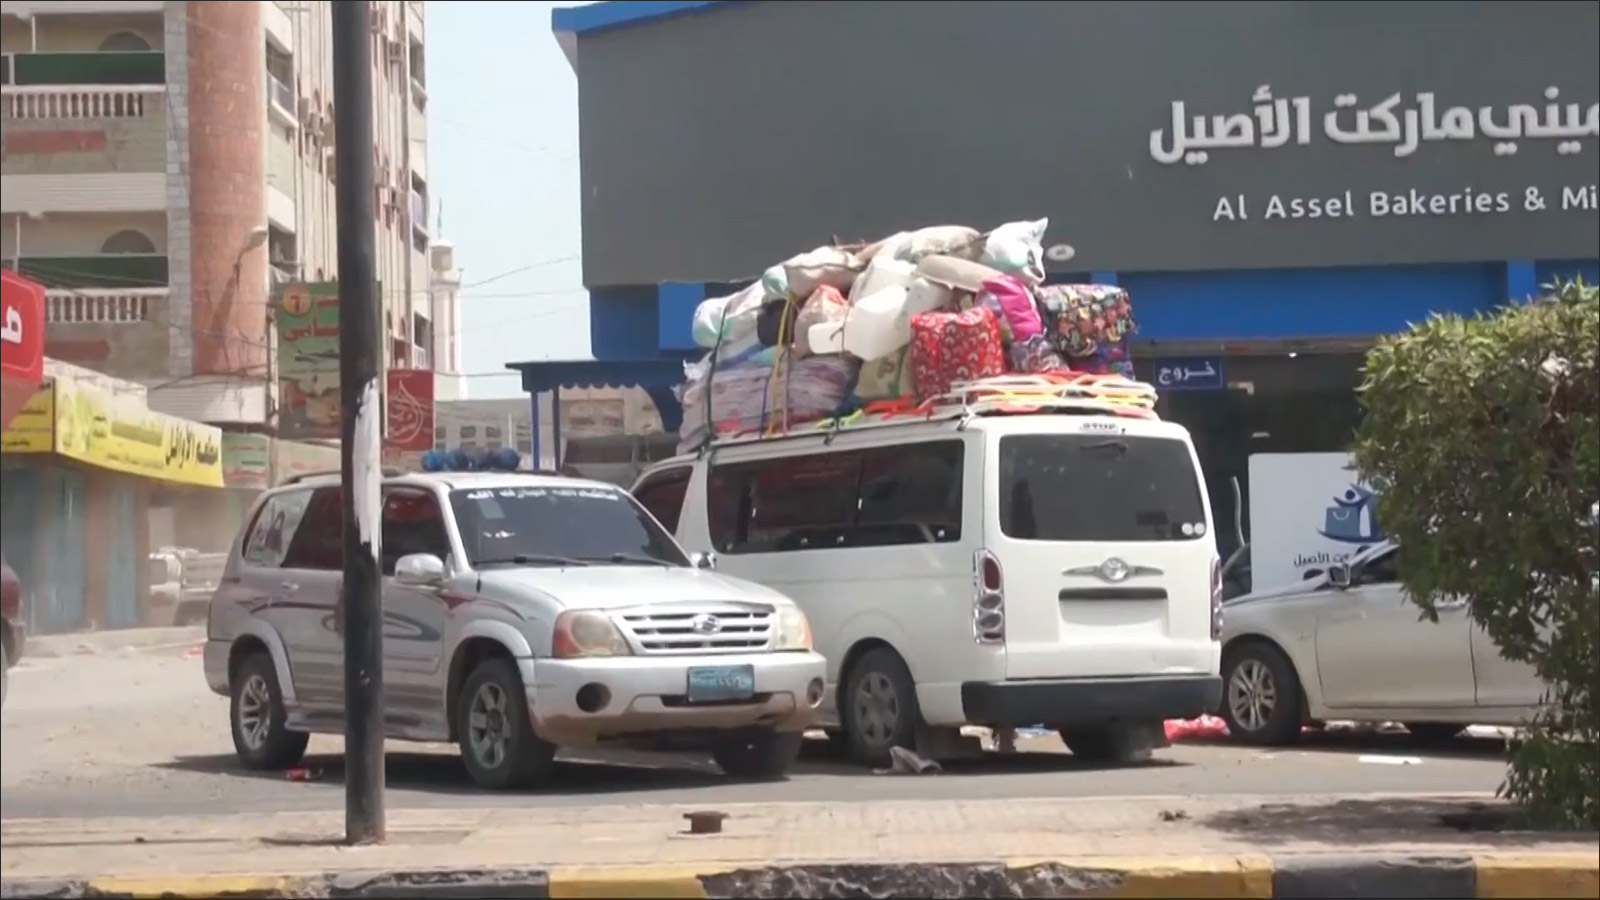 ‪الحزام الأمني يمنع في وقت سابق العائلات اليمنية النازحة من دخول عدن‬  (الجزيرة)